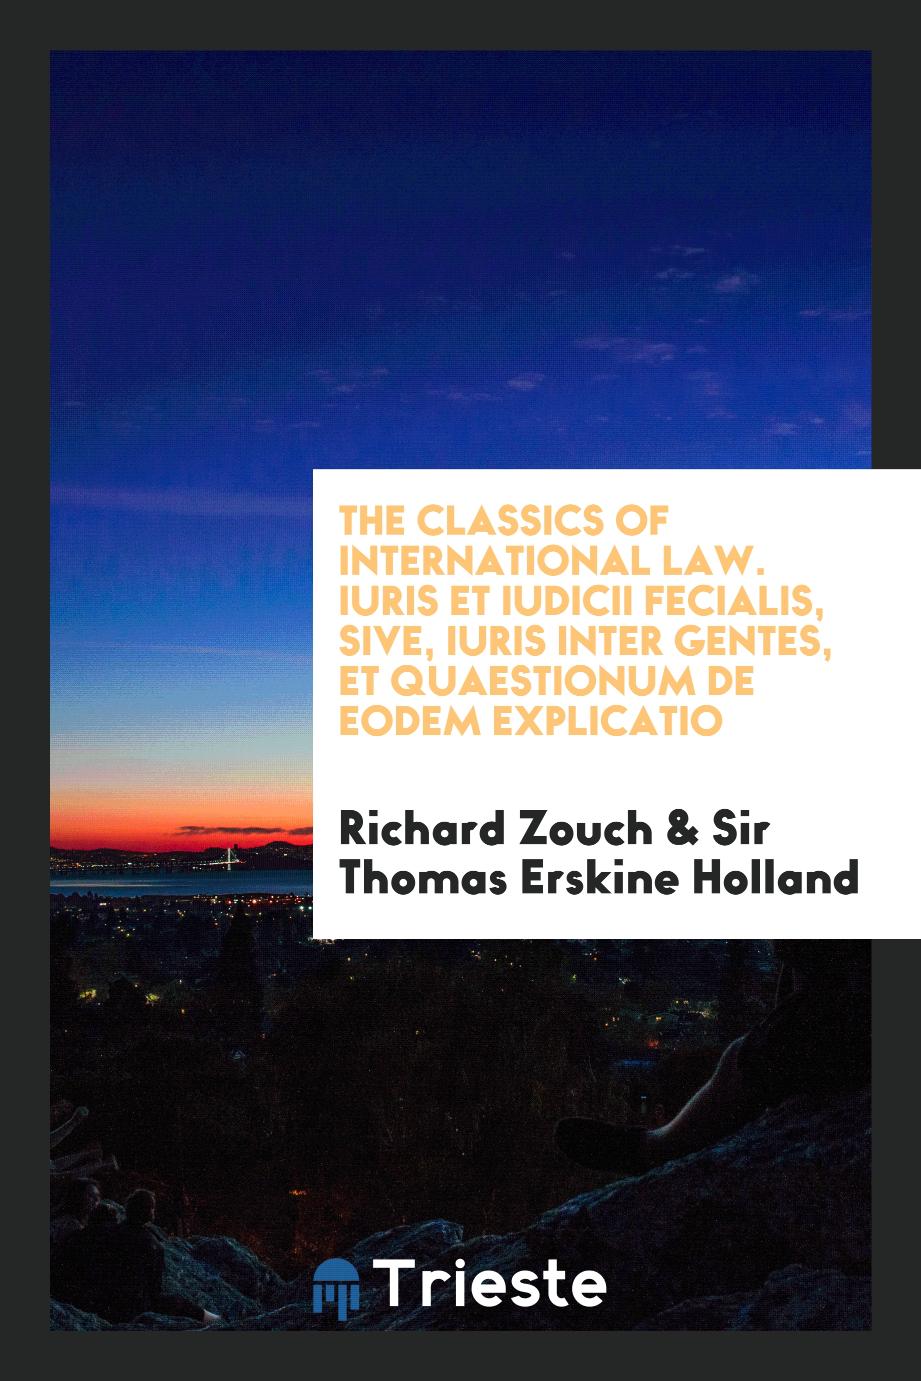 The Classics of international law. Iuris et iudicii fecialis, sive, iuris inter gentes, et quaestionum de eodem explicatio